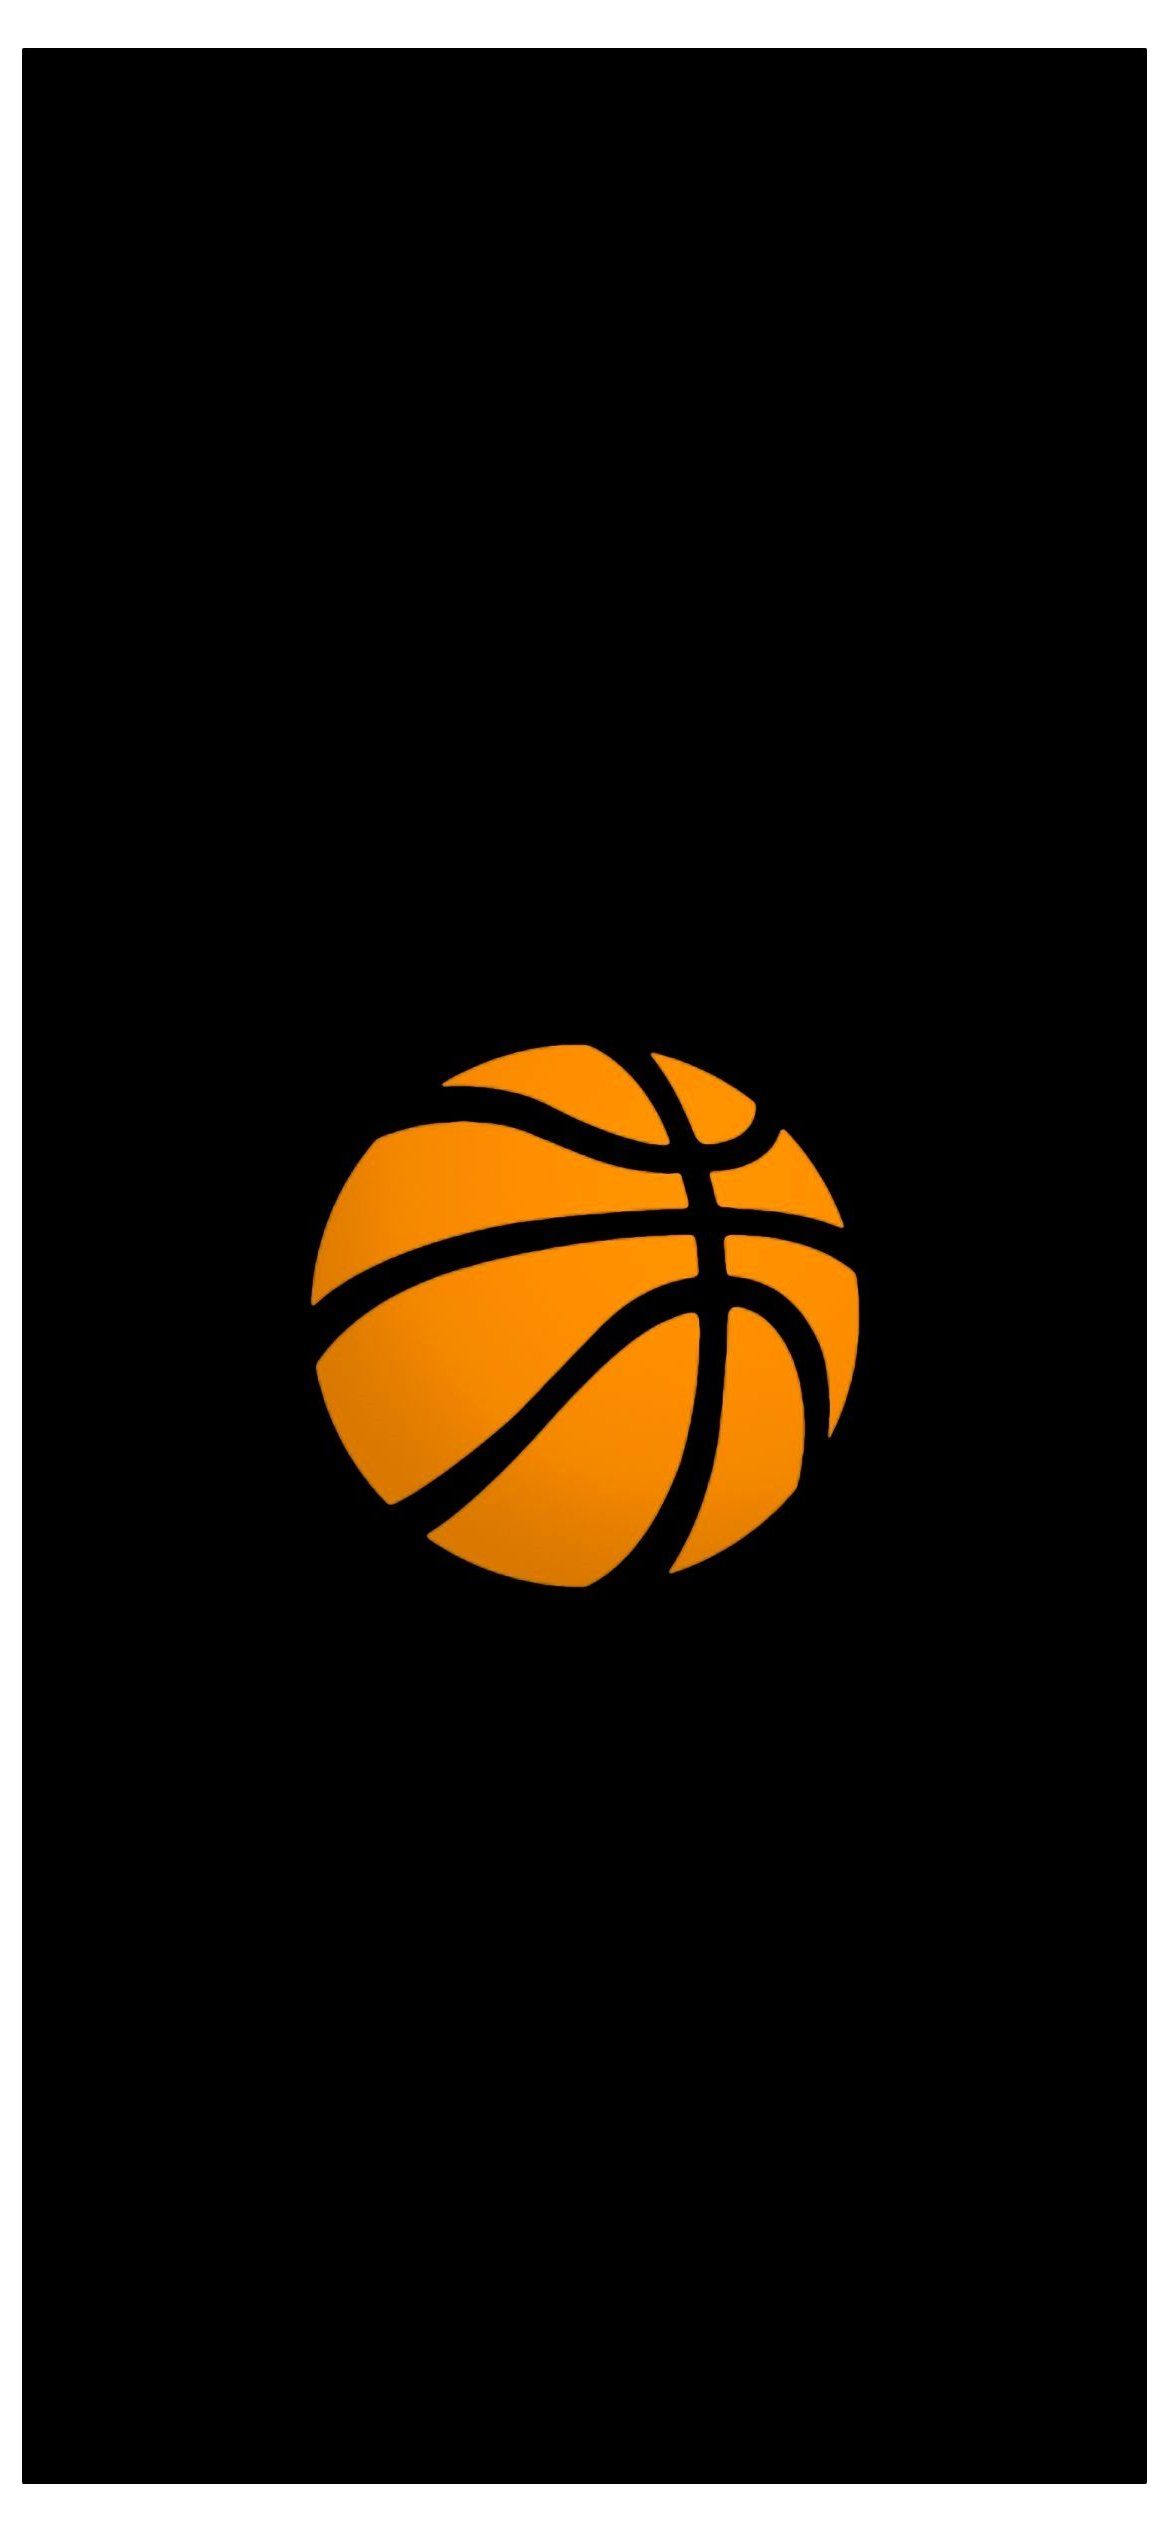 الوزير الأول قاعة الدراسة ديكور nike wallpaper just do it basketball Amazon